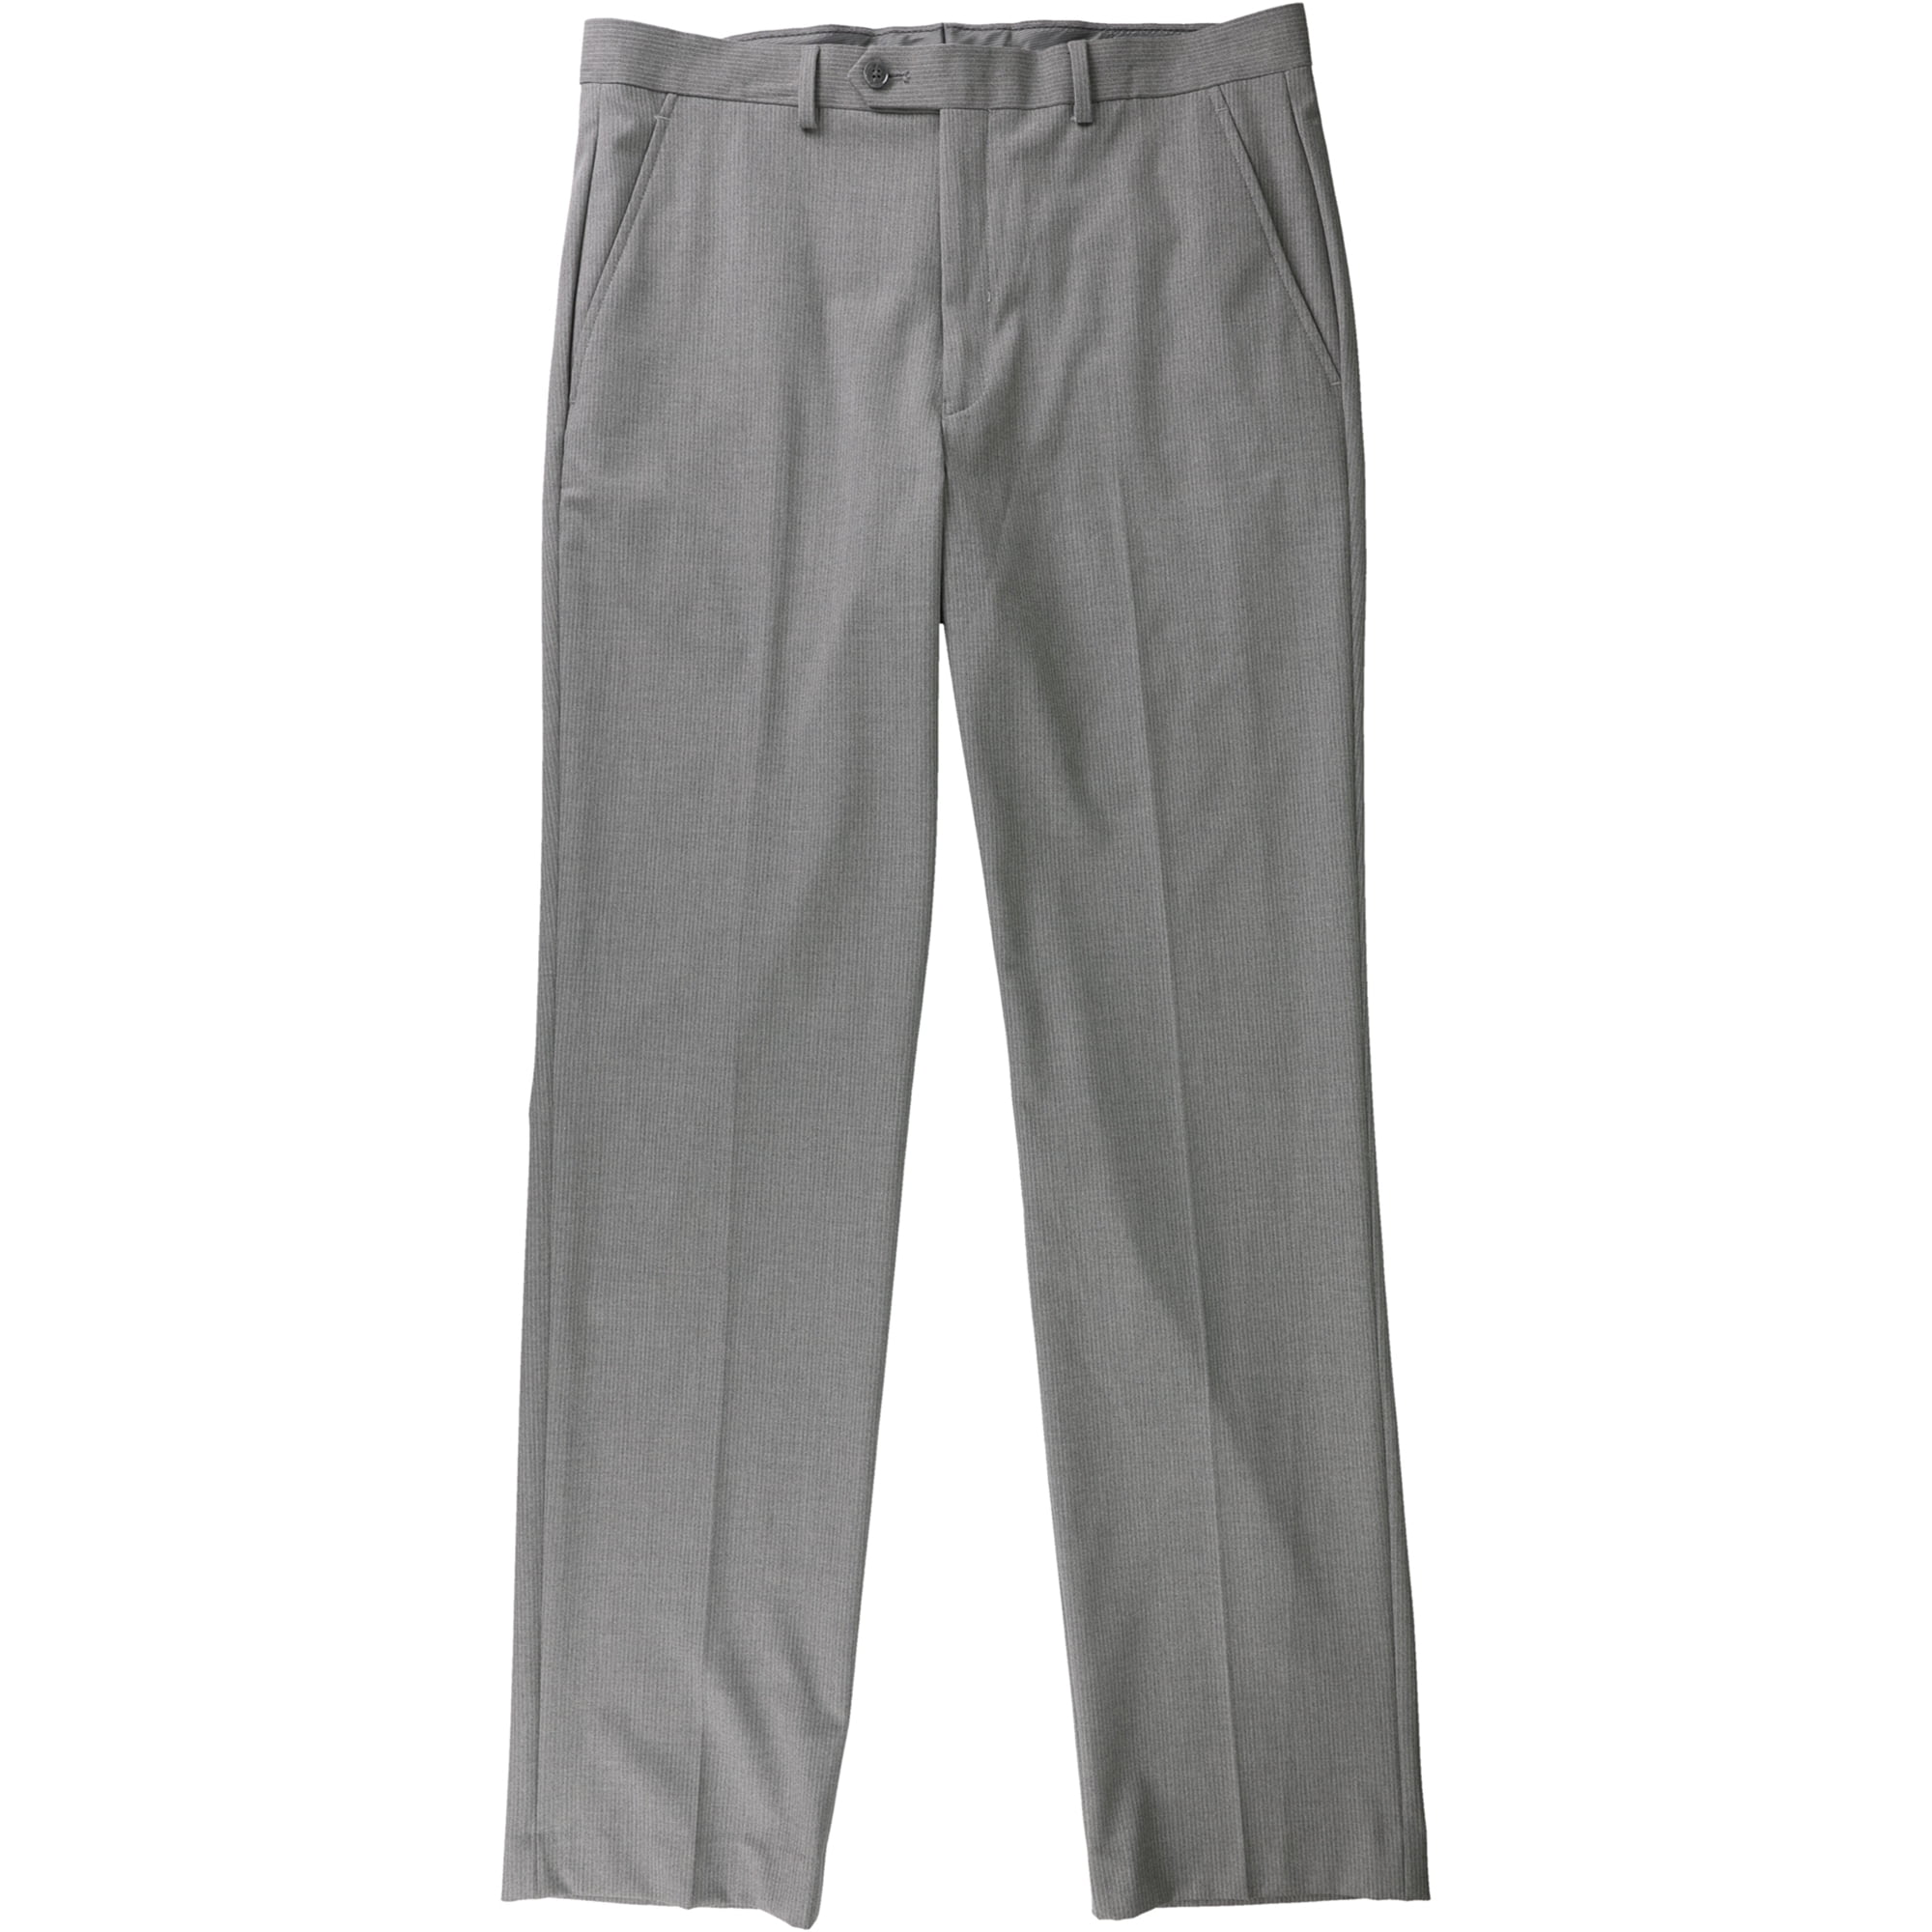 Alfani Mens Pinstripe Dress Pants Slacks, Grey, 34W x 34L - Walmart.com